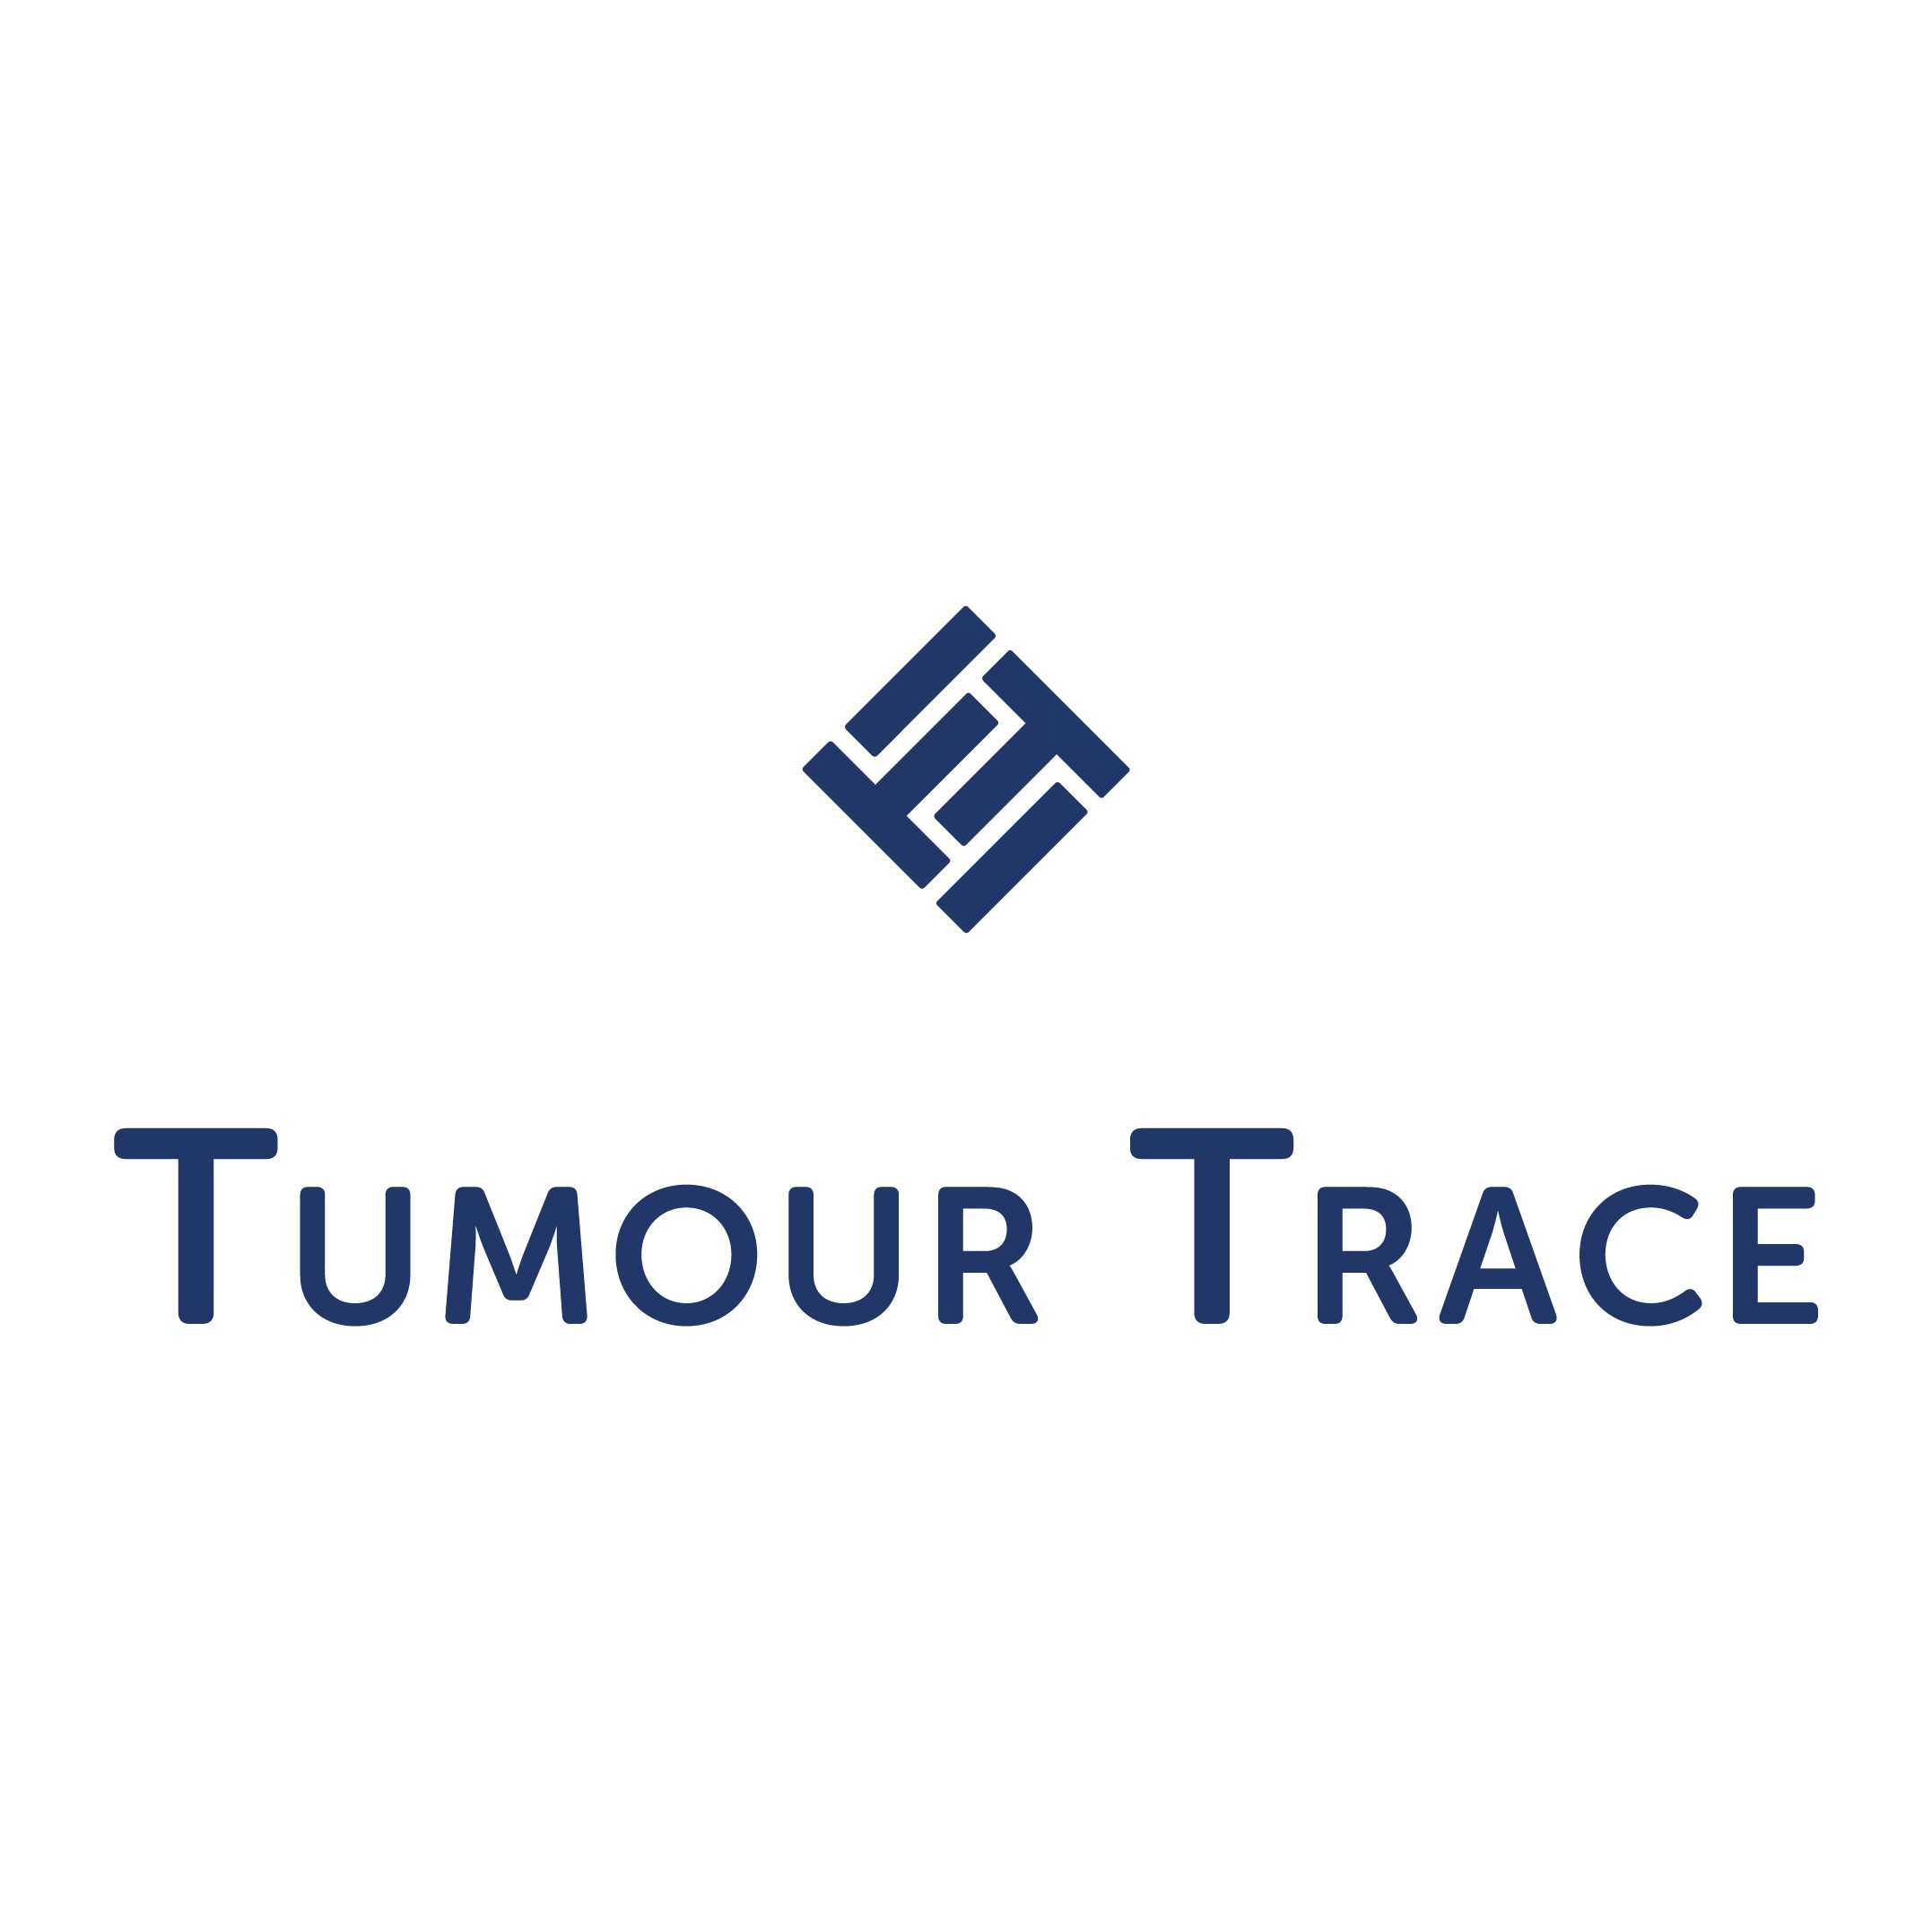 Tumour Trace